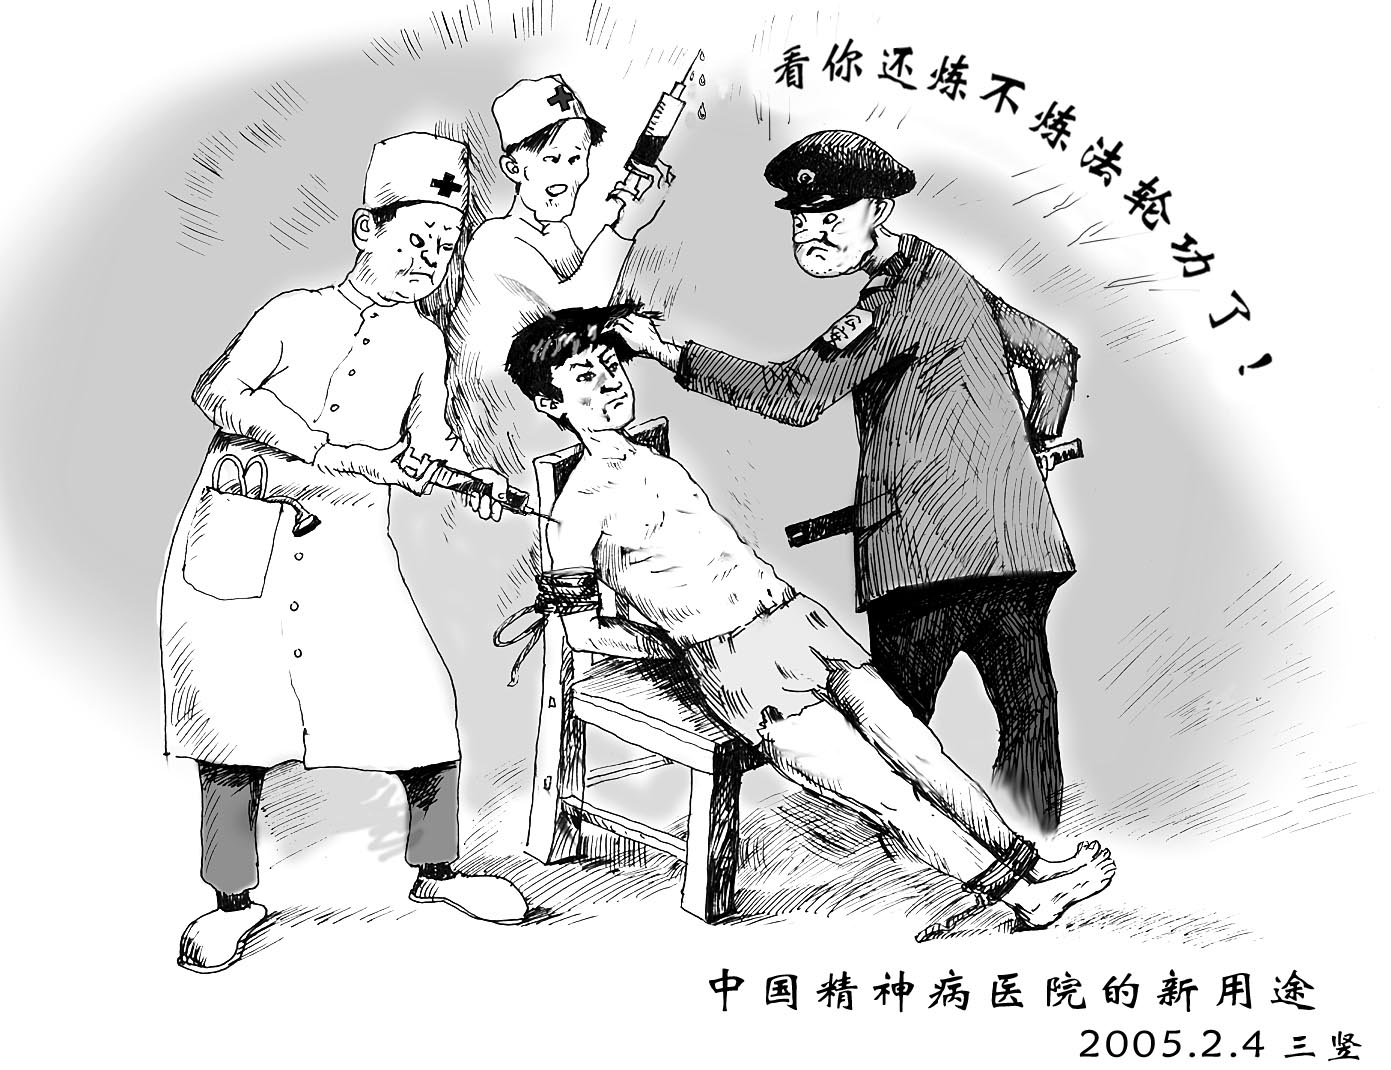 Image for article Après 10 ans de prison, un ancien professeur d’université est à nouveau condamné à une peine de 5 ans pour sa pratique du Falun Gong